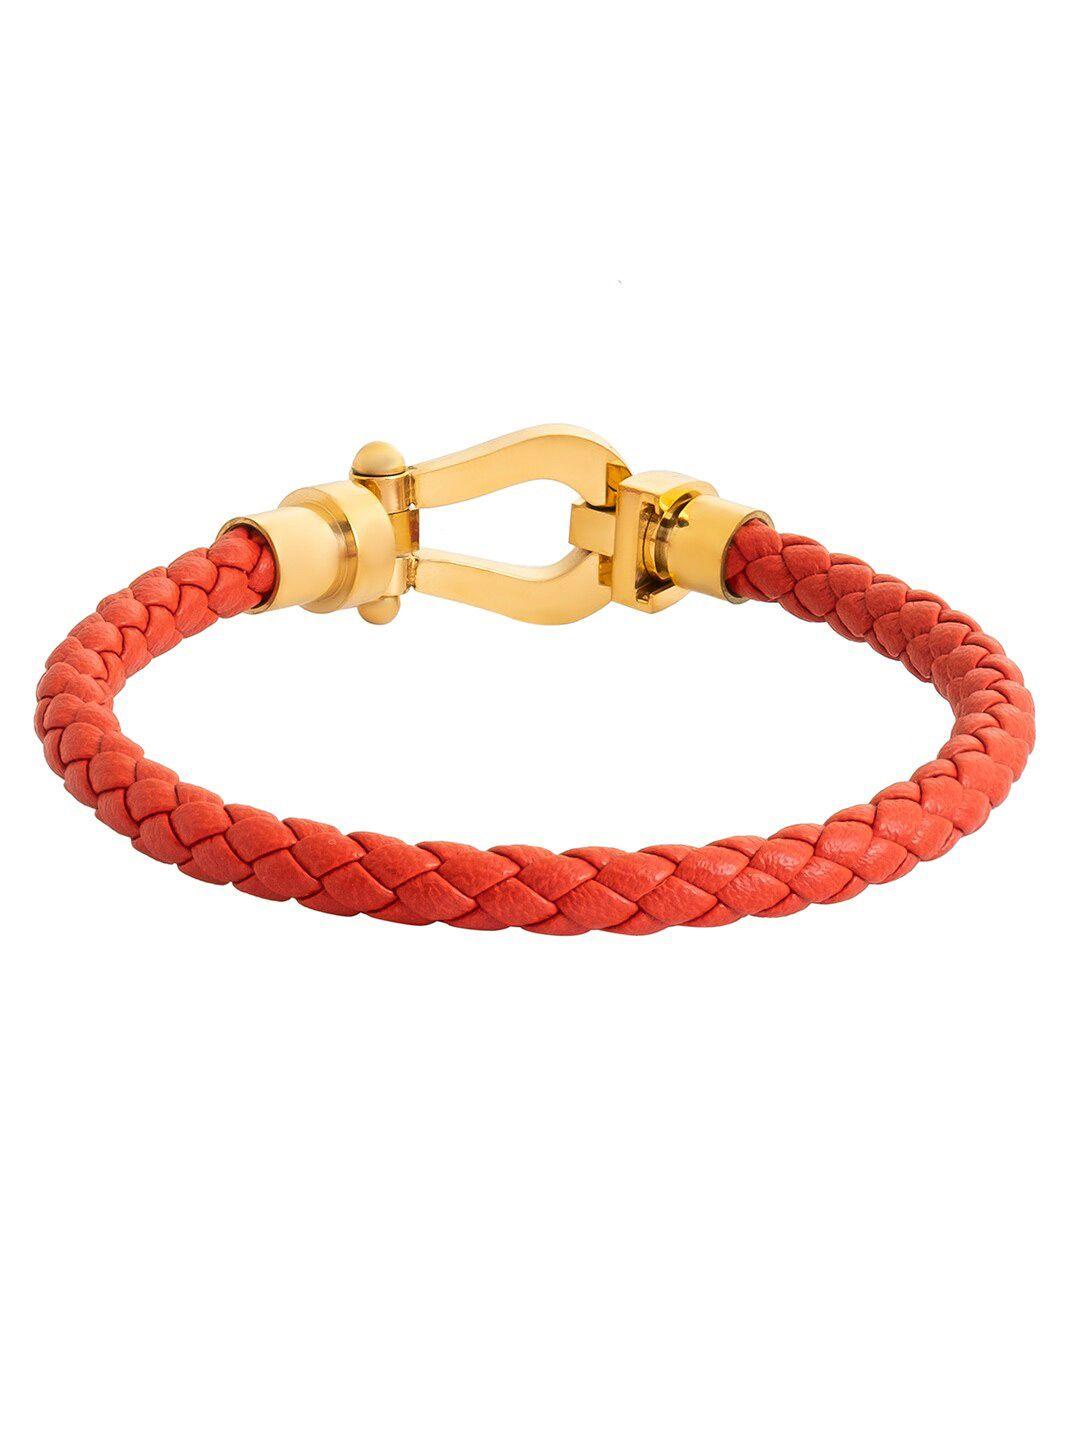 bodha men leather gold-plated wraparound bracelet